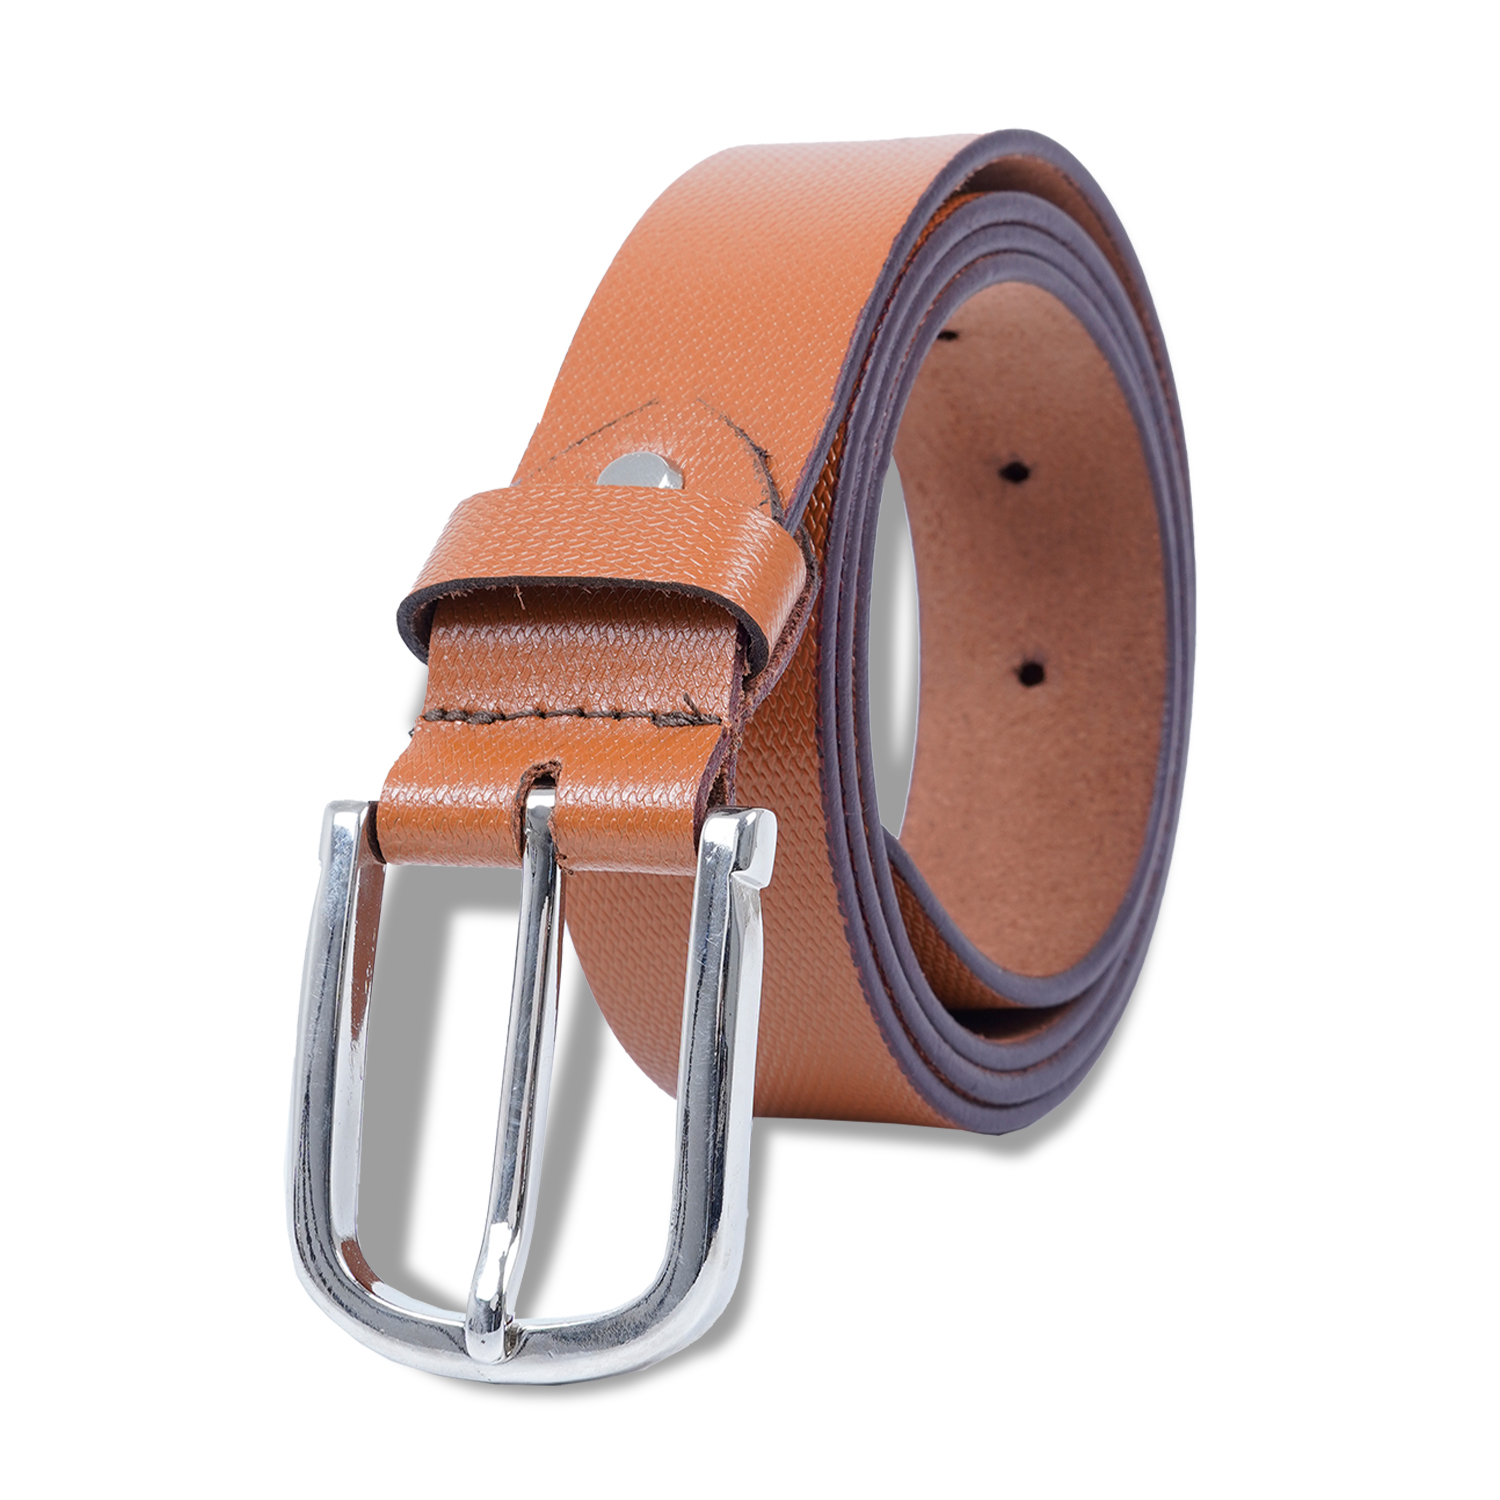  Genuine Leather Belt For Men's| Tan| Formal Belt-asset-283